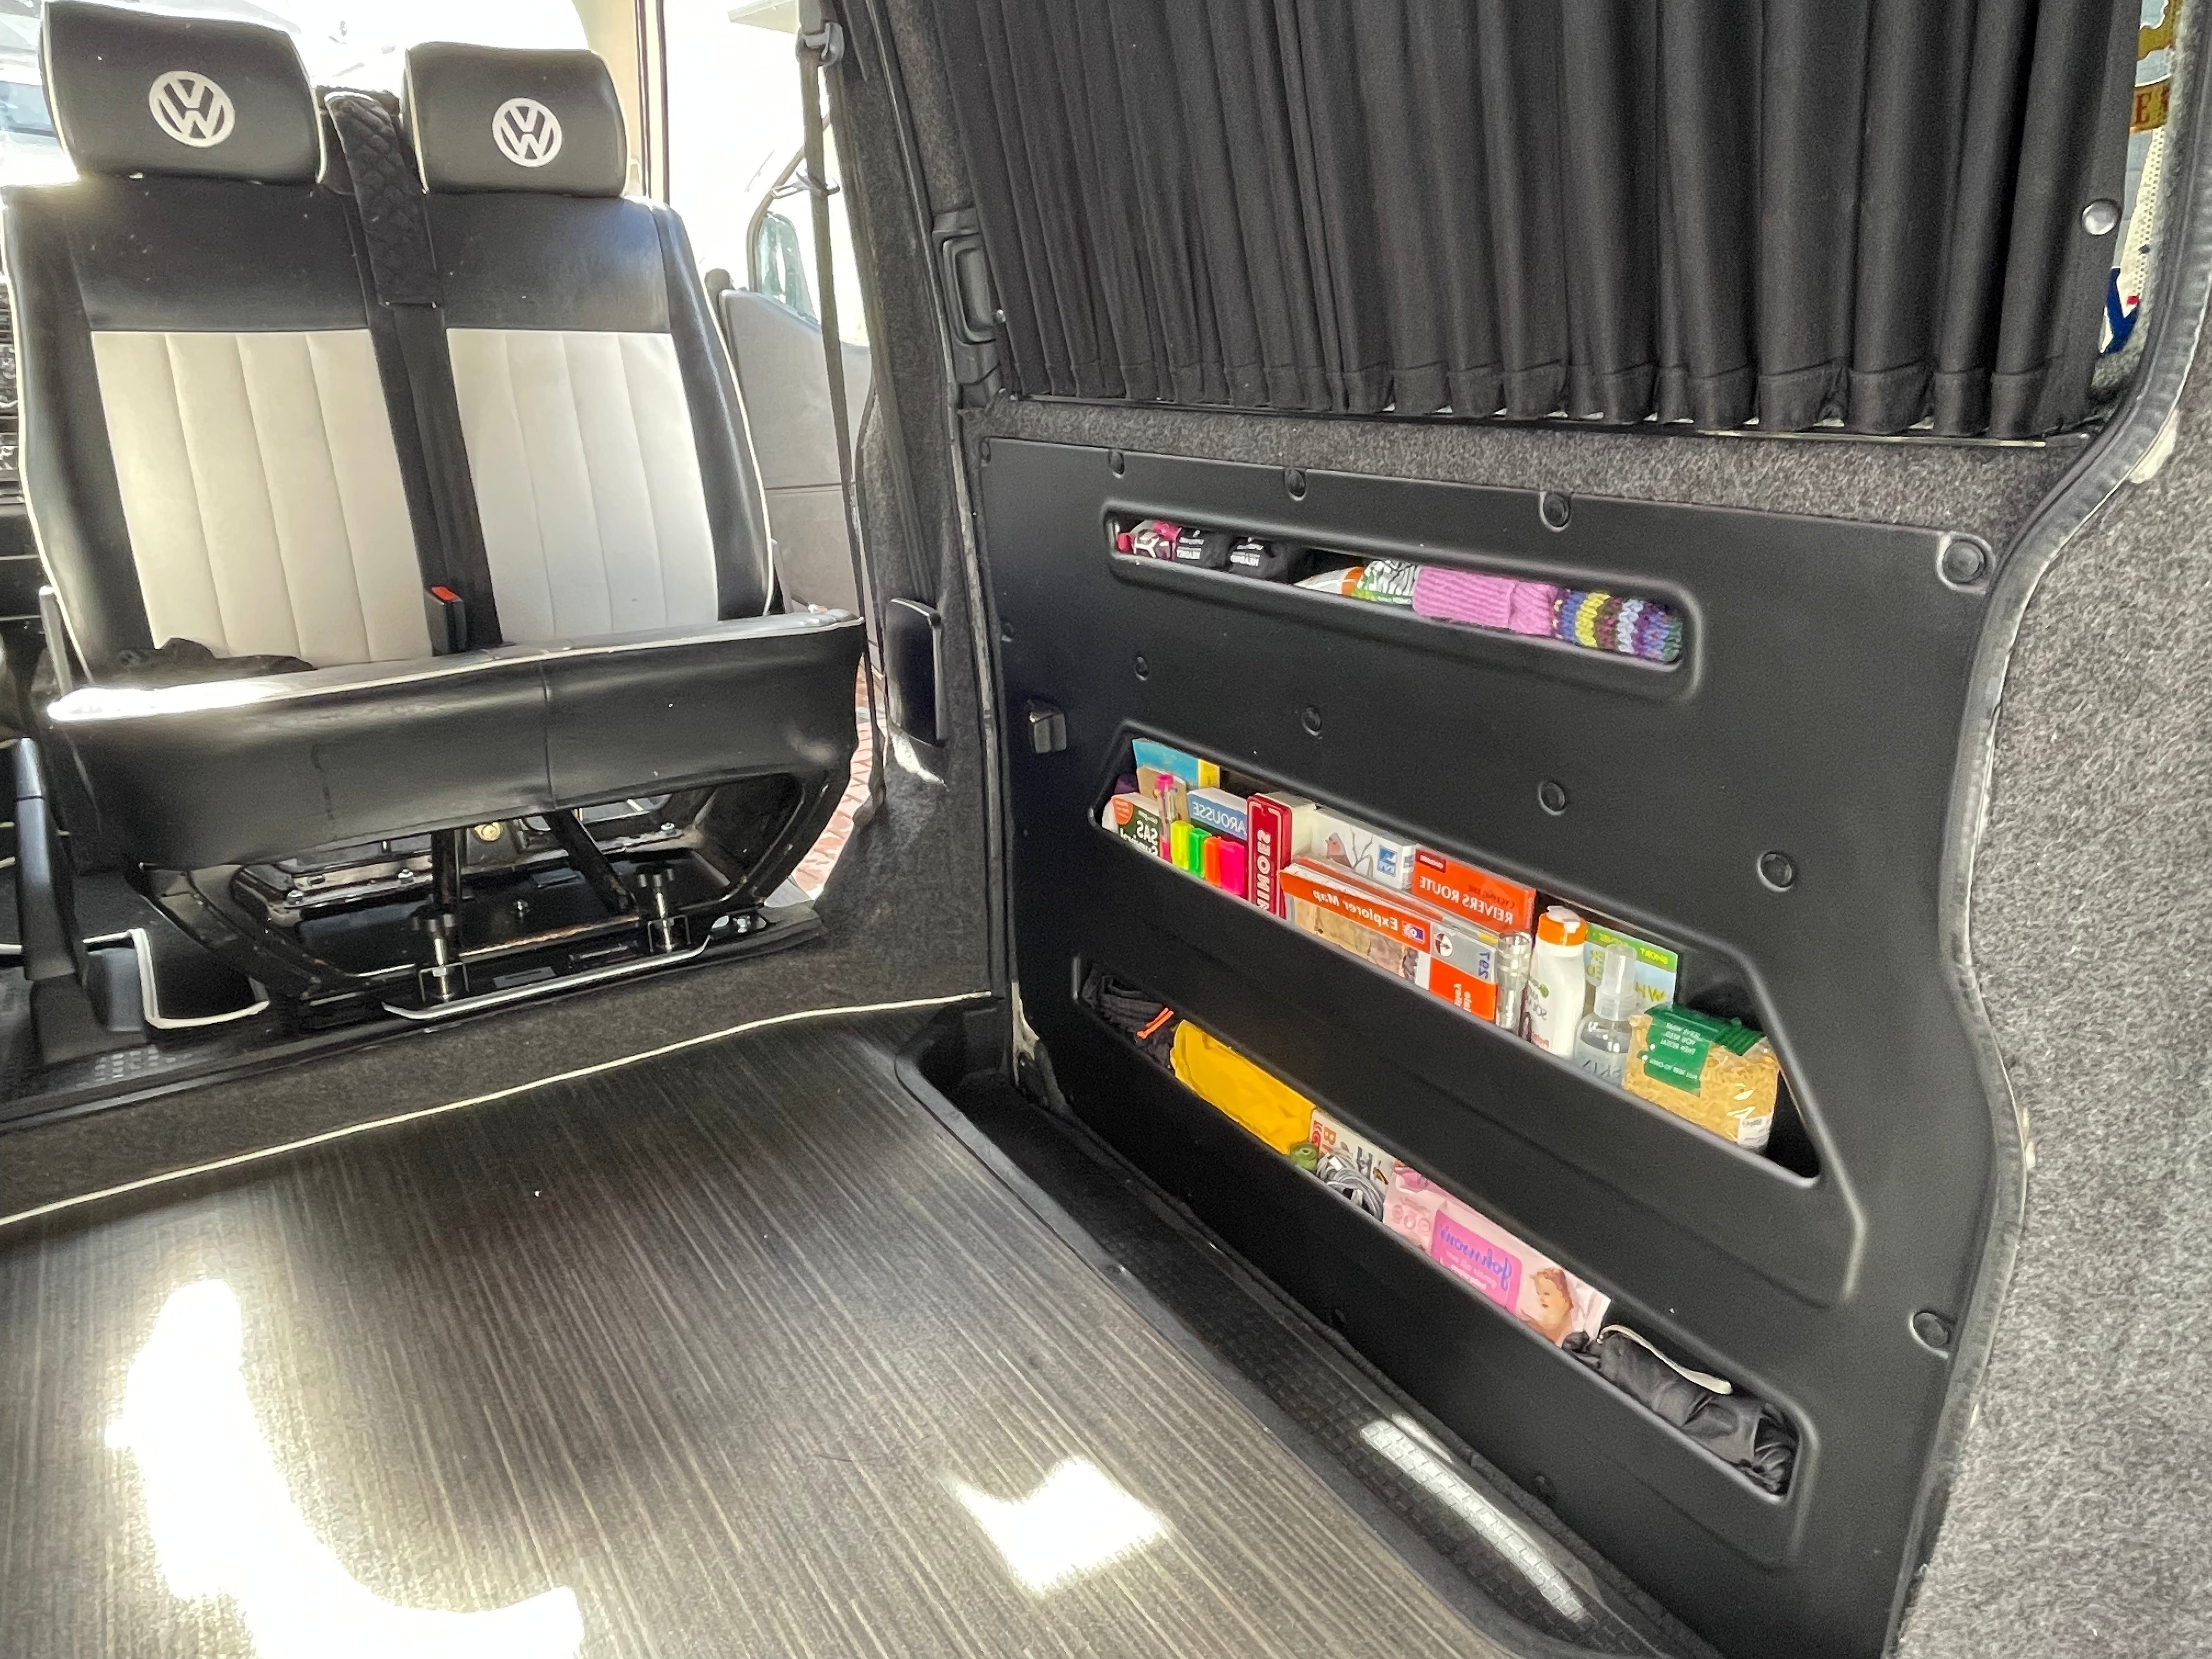 Kiravans VW Transporter T4 DoorStore TWIN PACK - Extra Storage for the Sliding Door (Left & Right Sliding Door)